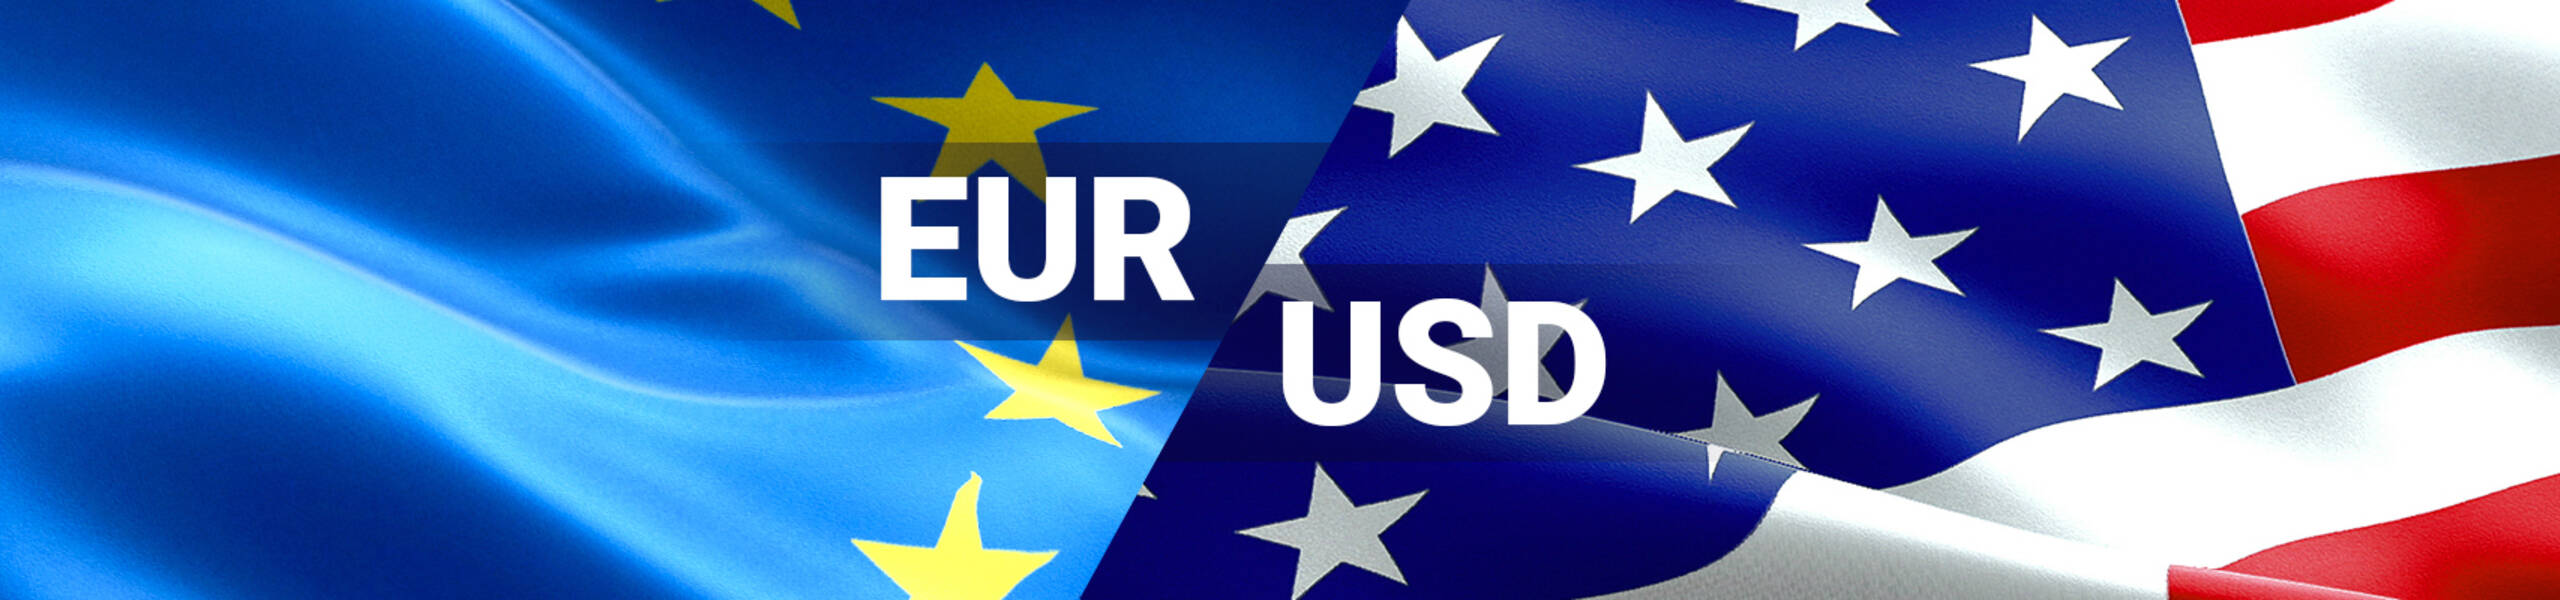 EUR/USD: เริ่มเป็นขาลงในระยะสั้นถึงระยะกลาง